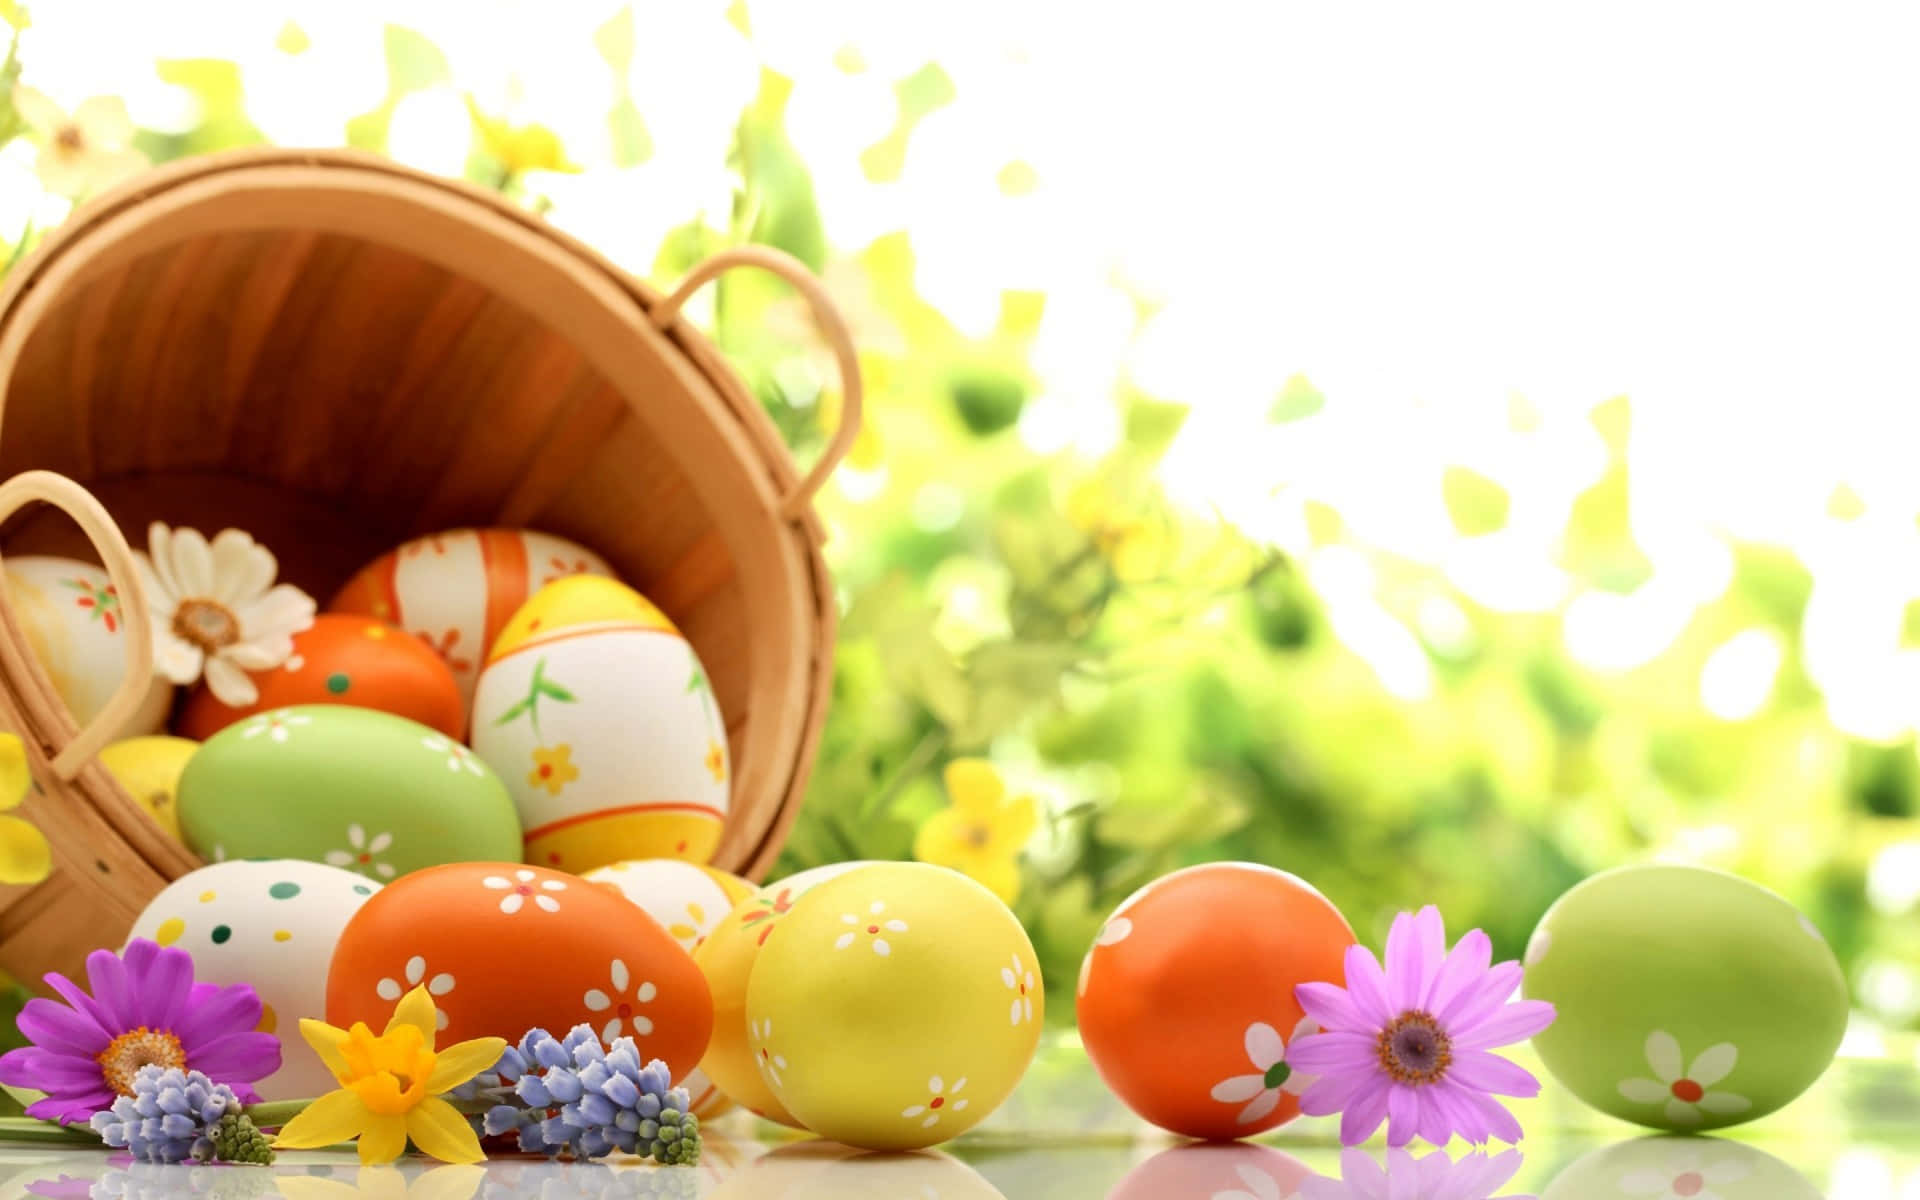 Adorableconejo De Pascua Rodeado De Huevos Coloridos Sobre Un Vibrante Fondo De Primavera.